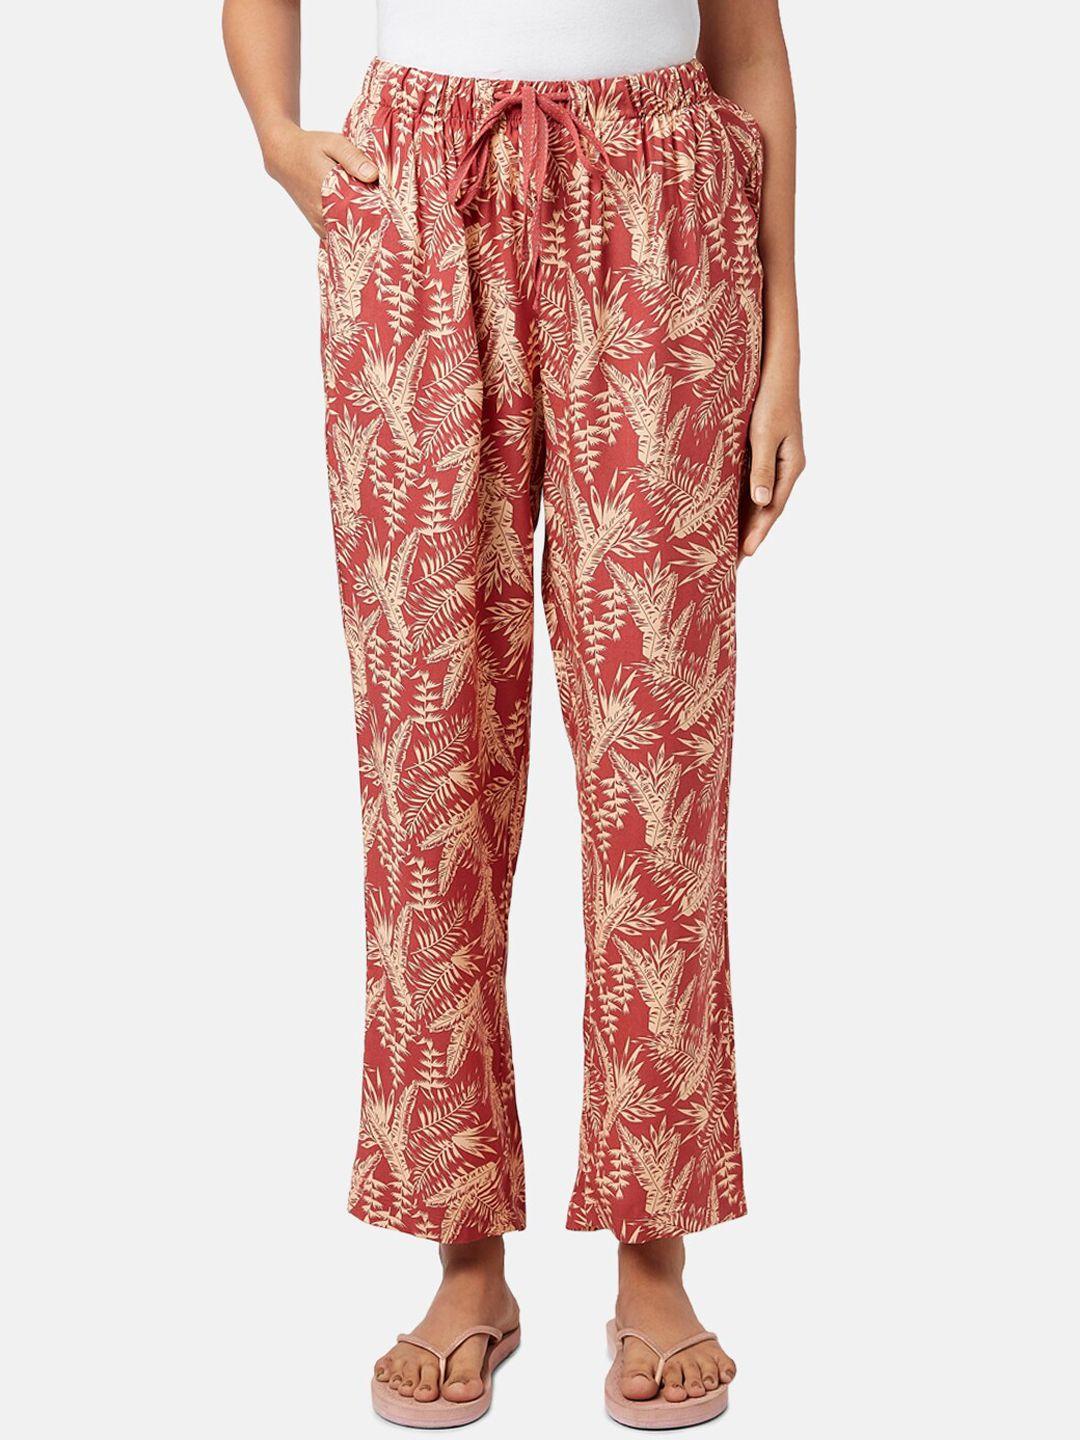 dreamz by pantaloons women printed lounge pants